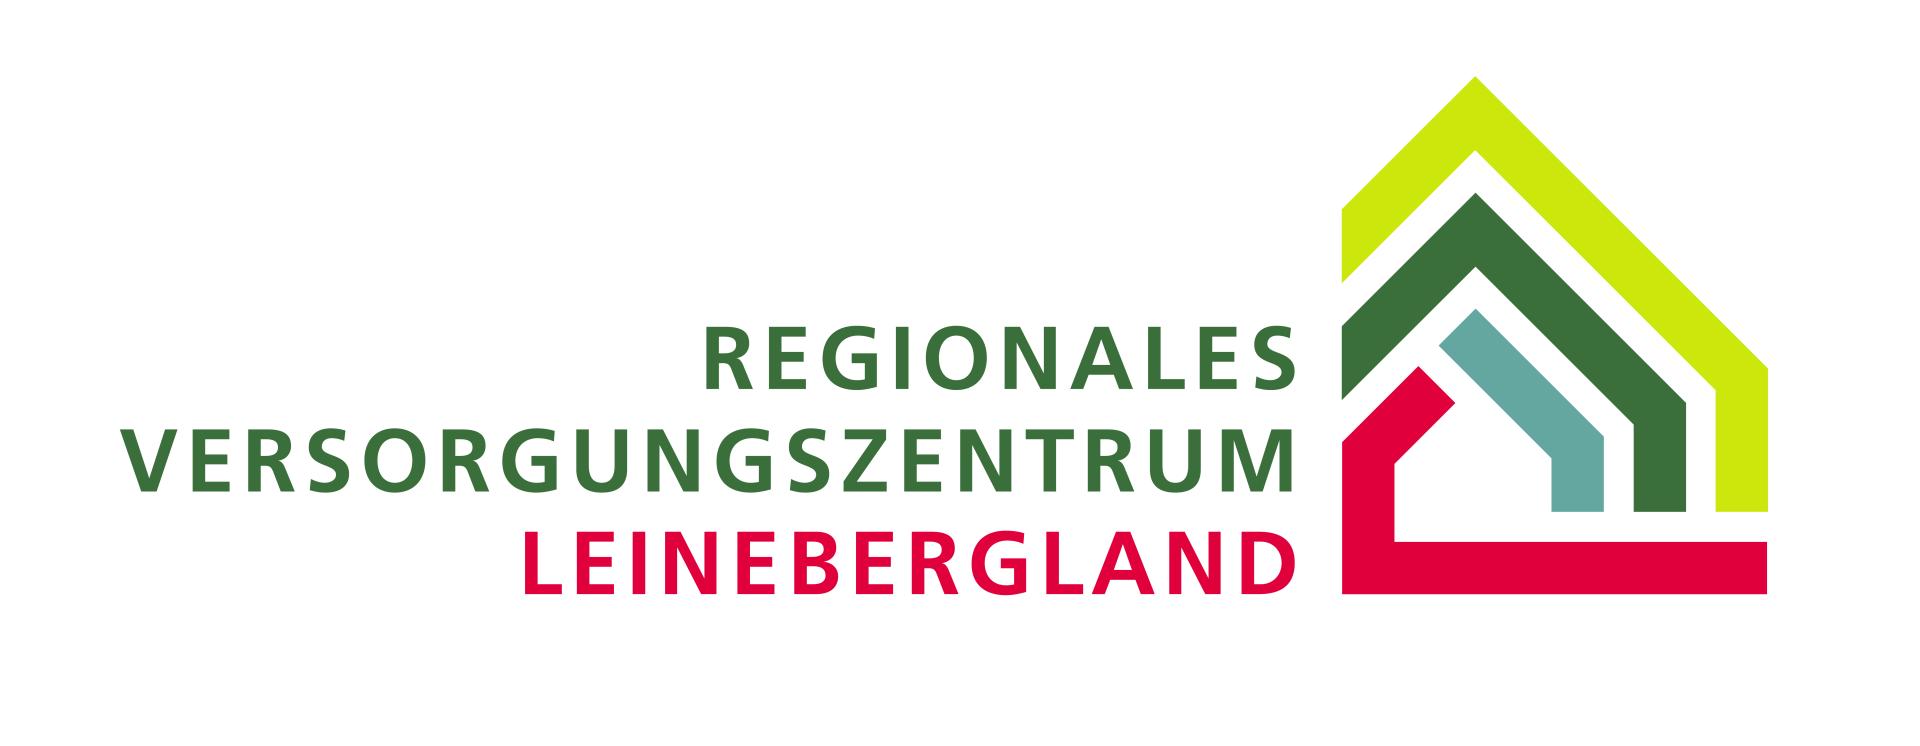 Regionales Versorgungszentrum Leinebergland